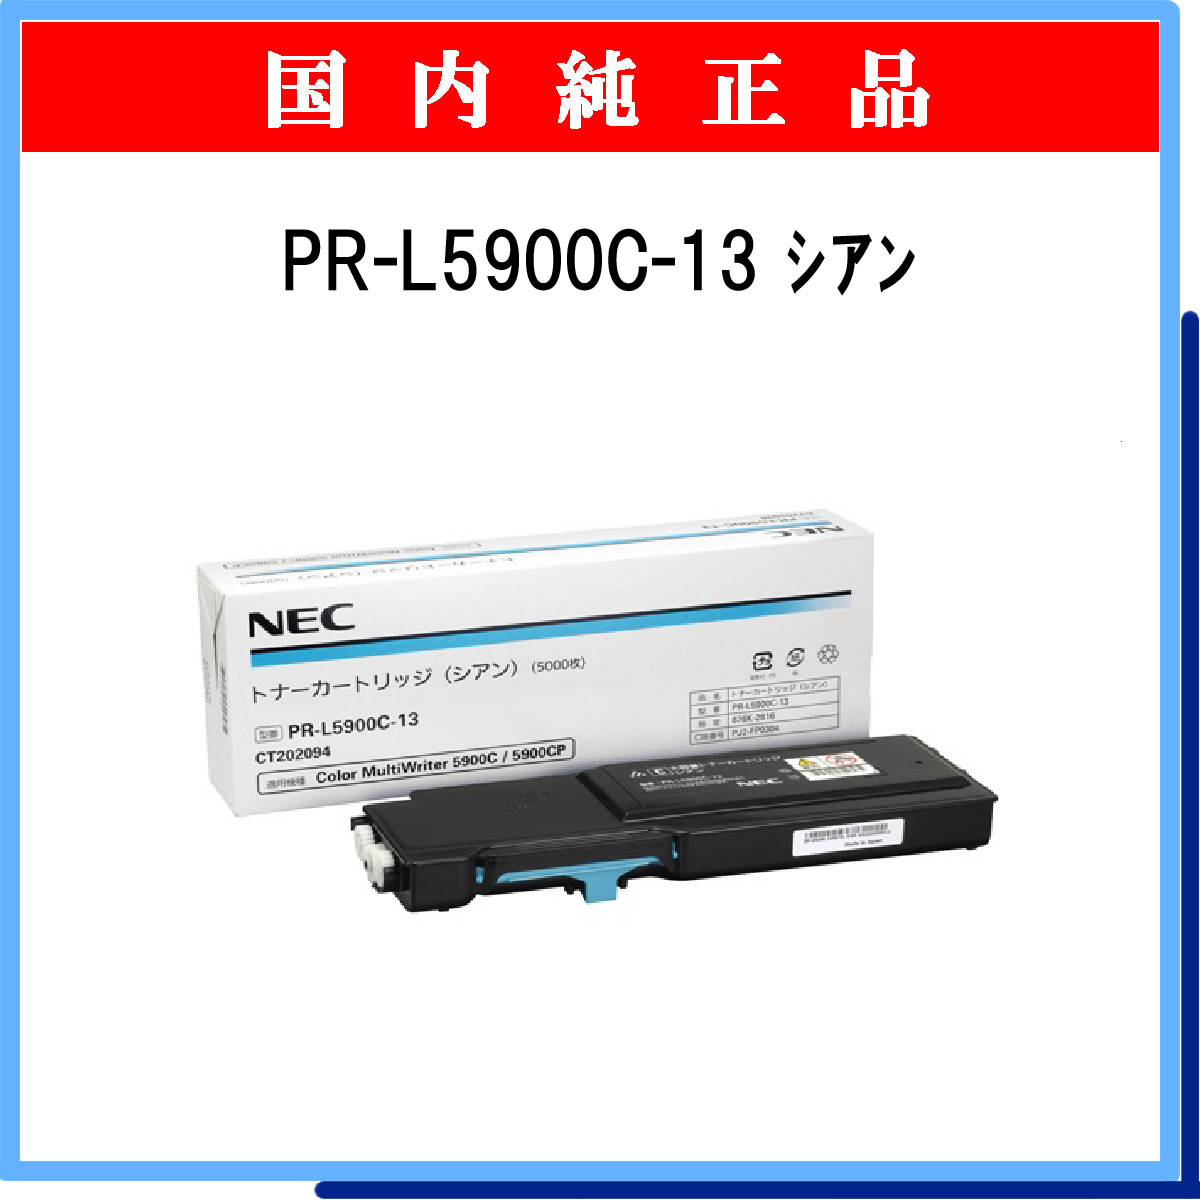 新作 PR-L5900C-13